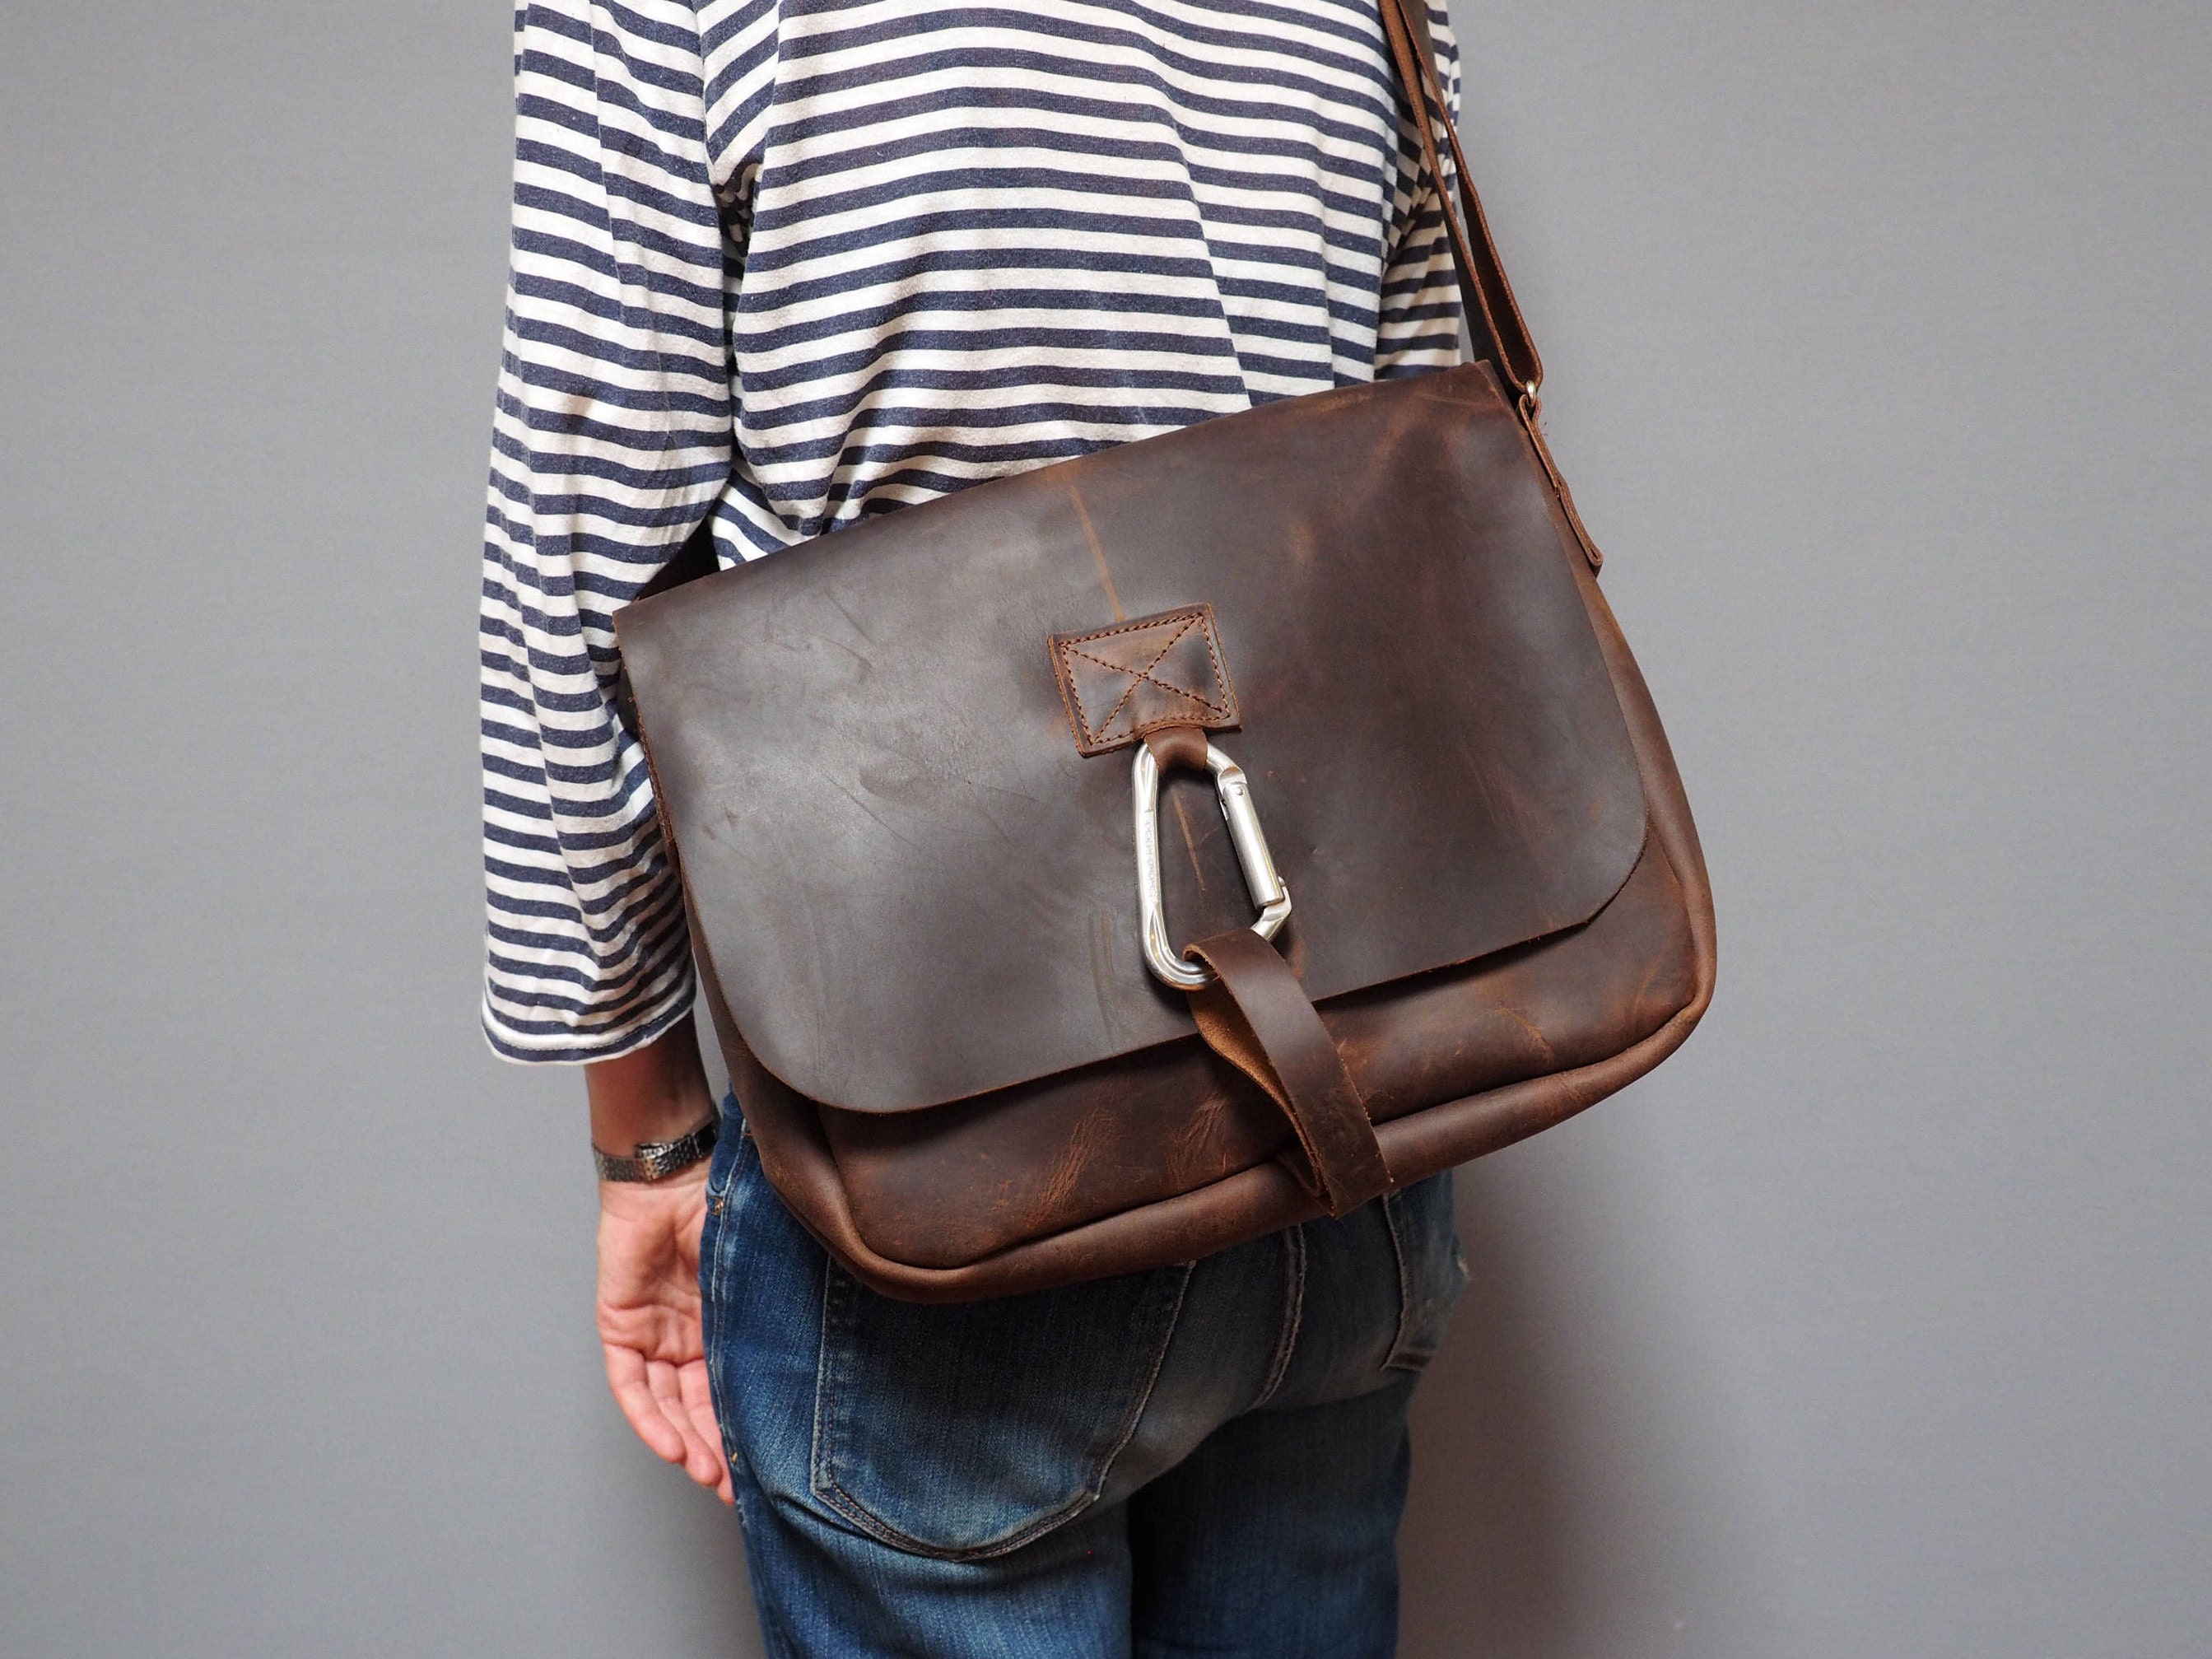 Mens Leather Bag Carabiner Satchel Bag | Etsy UK